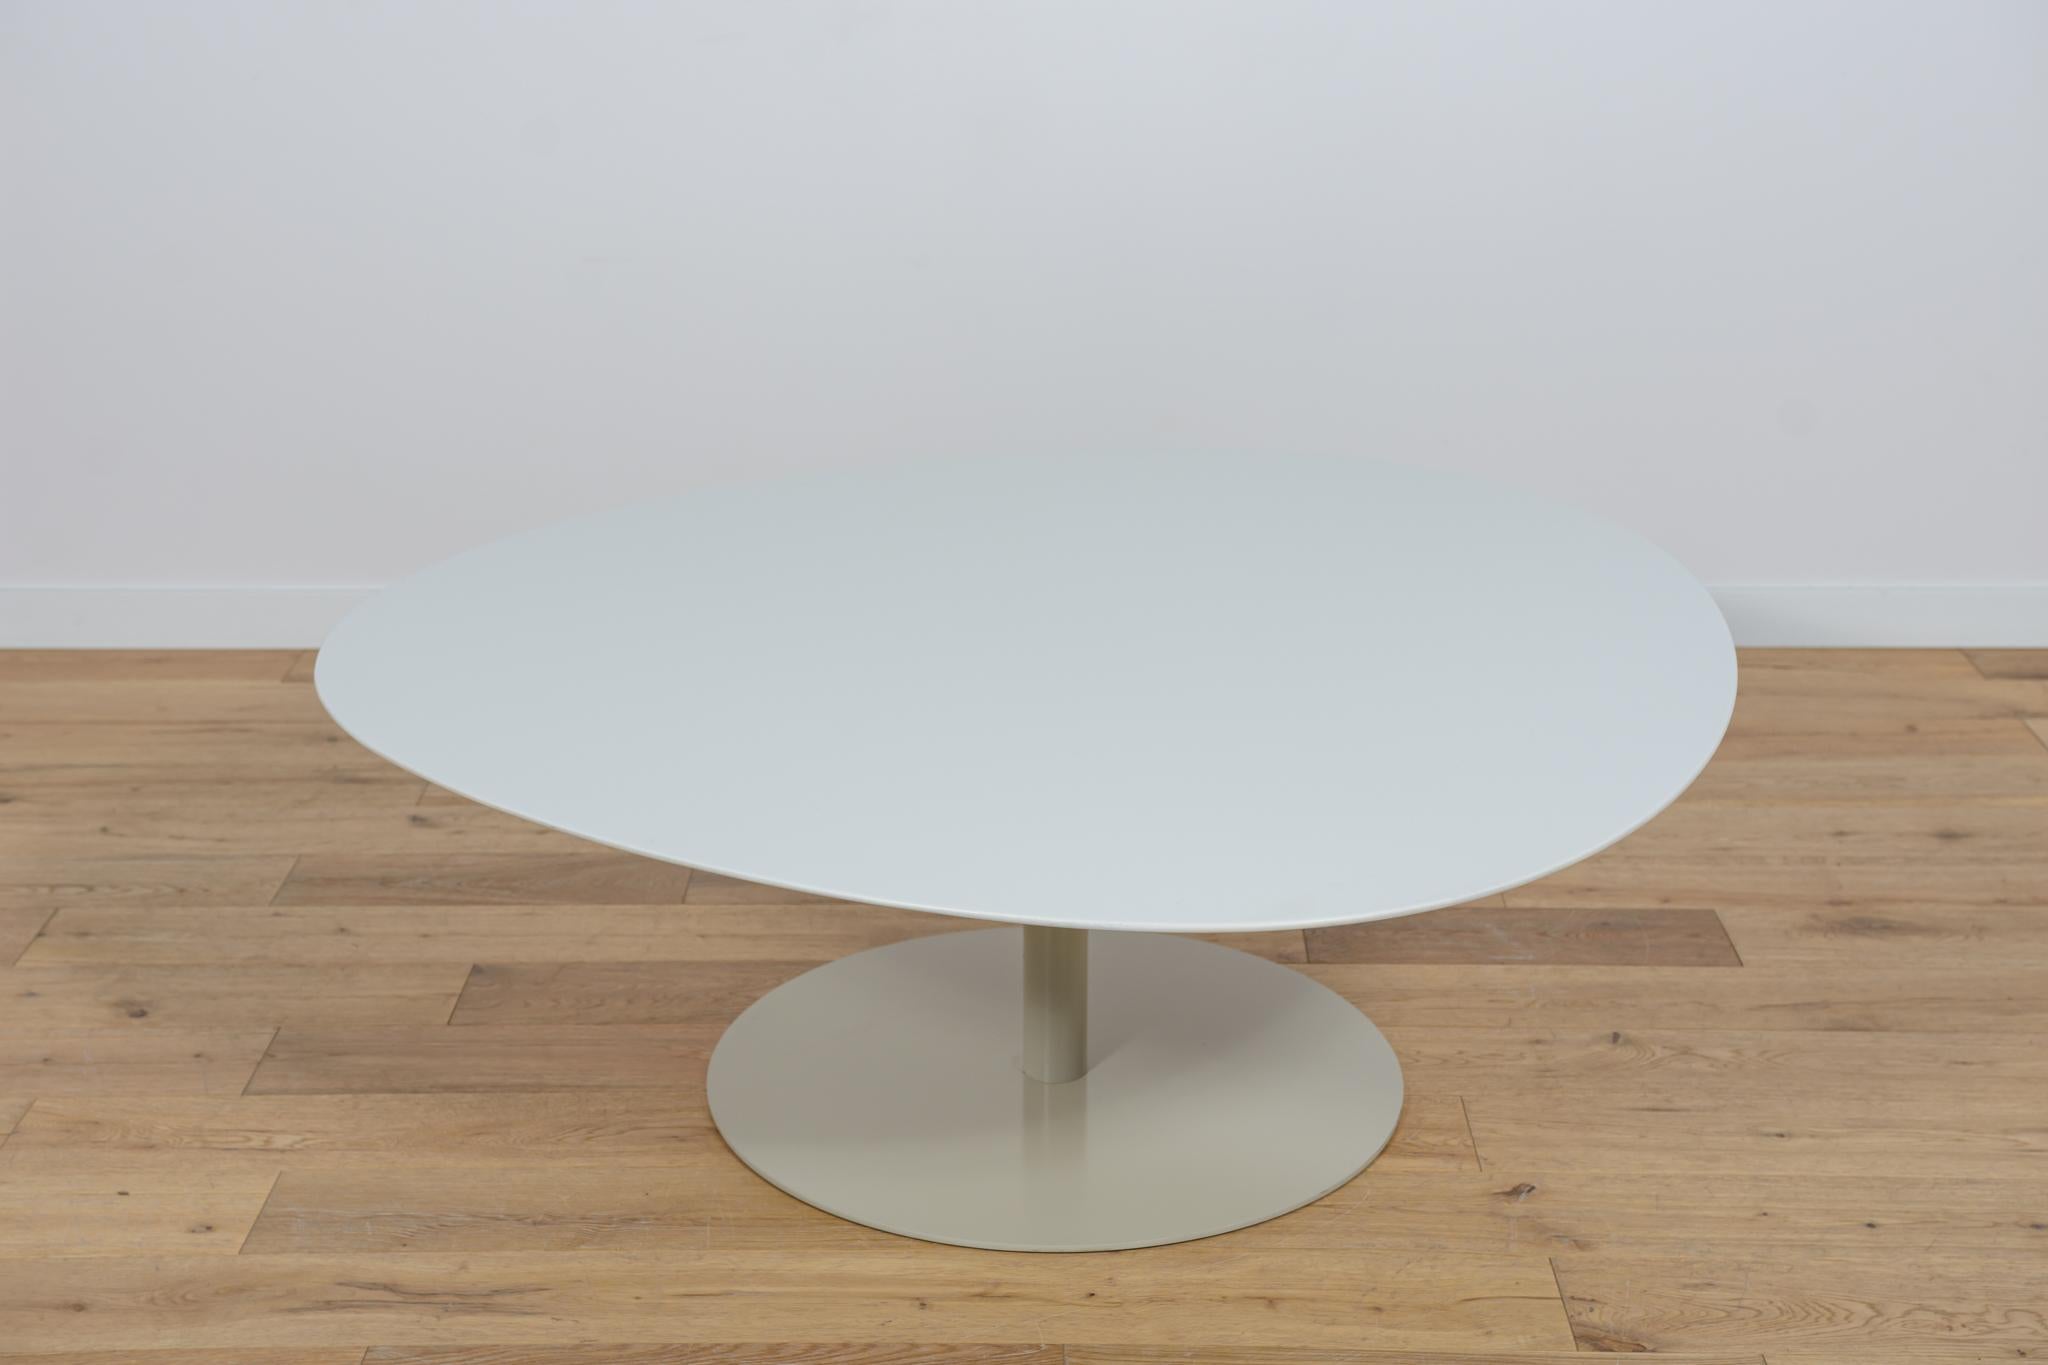 Der Tisch MV50 wurde von Morten Voss für den dänischen Hersteller Fritz Hansen im ersten Jahrzehnt des 21. Jahrhunderts entworfen. Möbel mit einer interessanten modernistischen Form.  Der Tisch MV50 wurde renoviert, von der alten Oberfläche